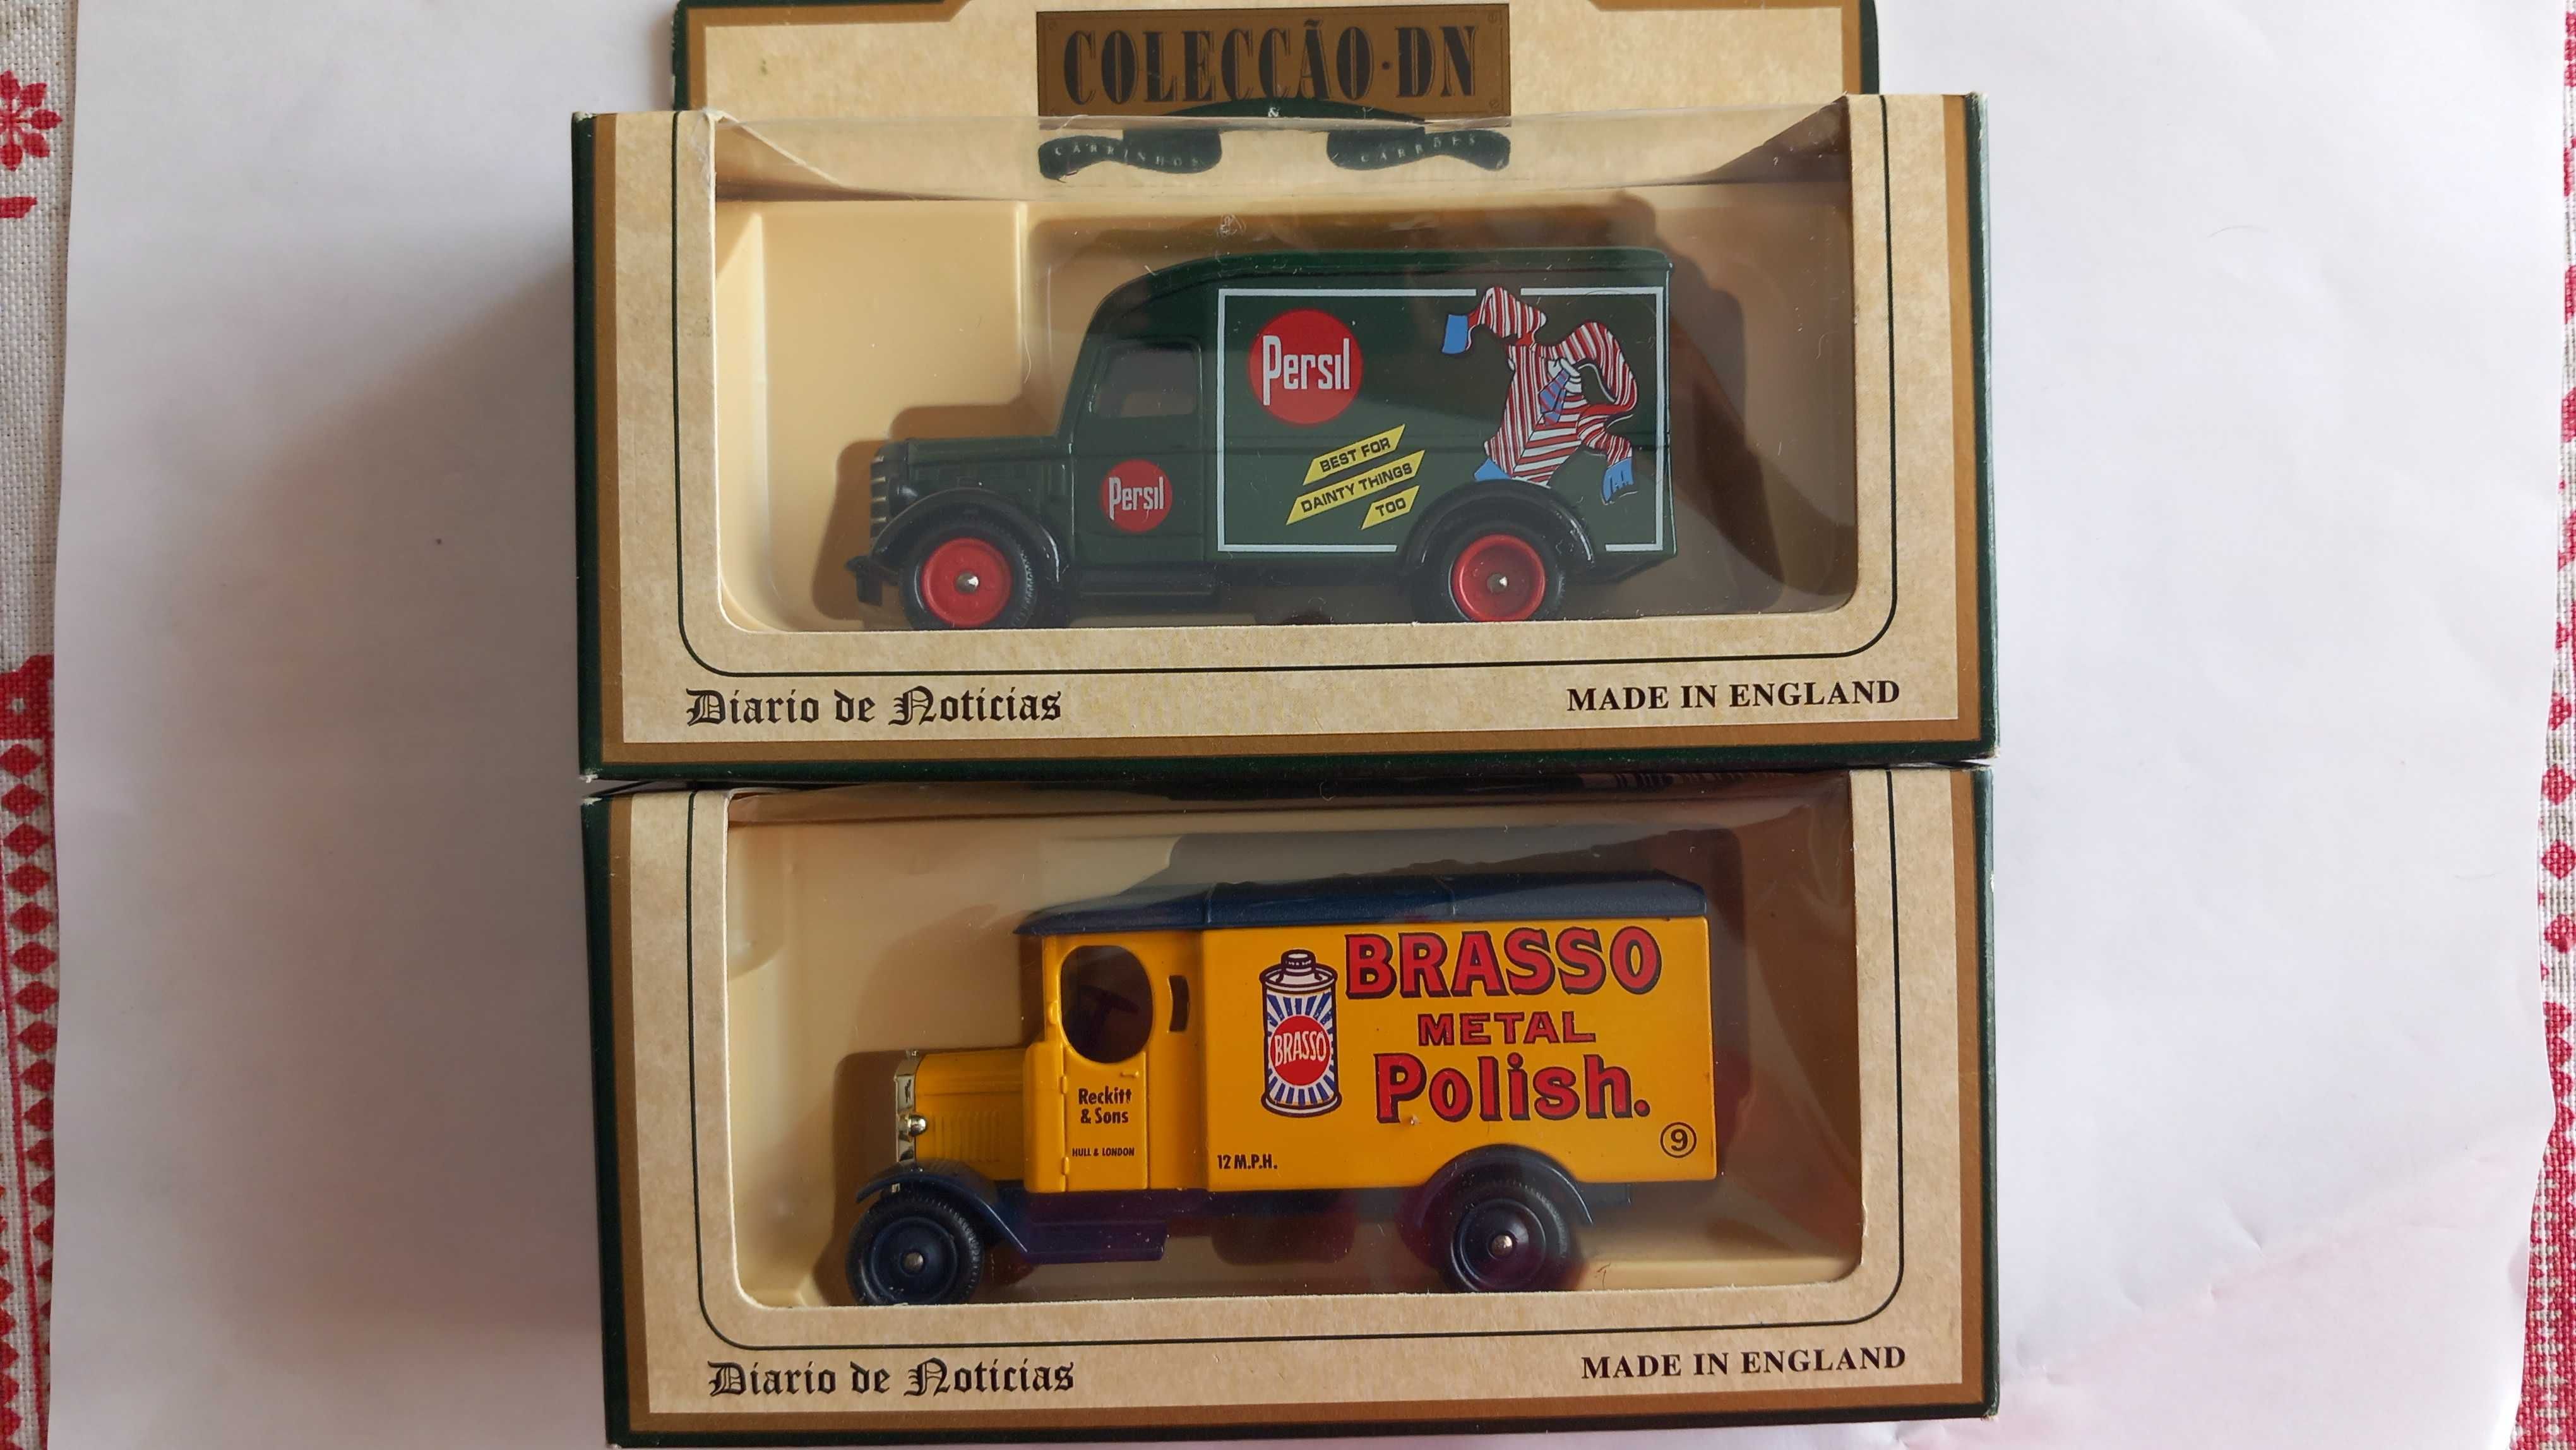 Carros miniaturas Colecção DN